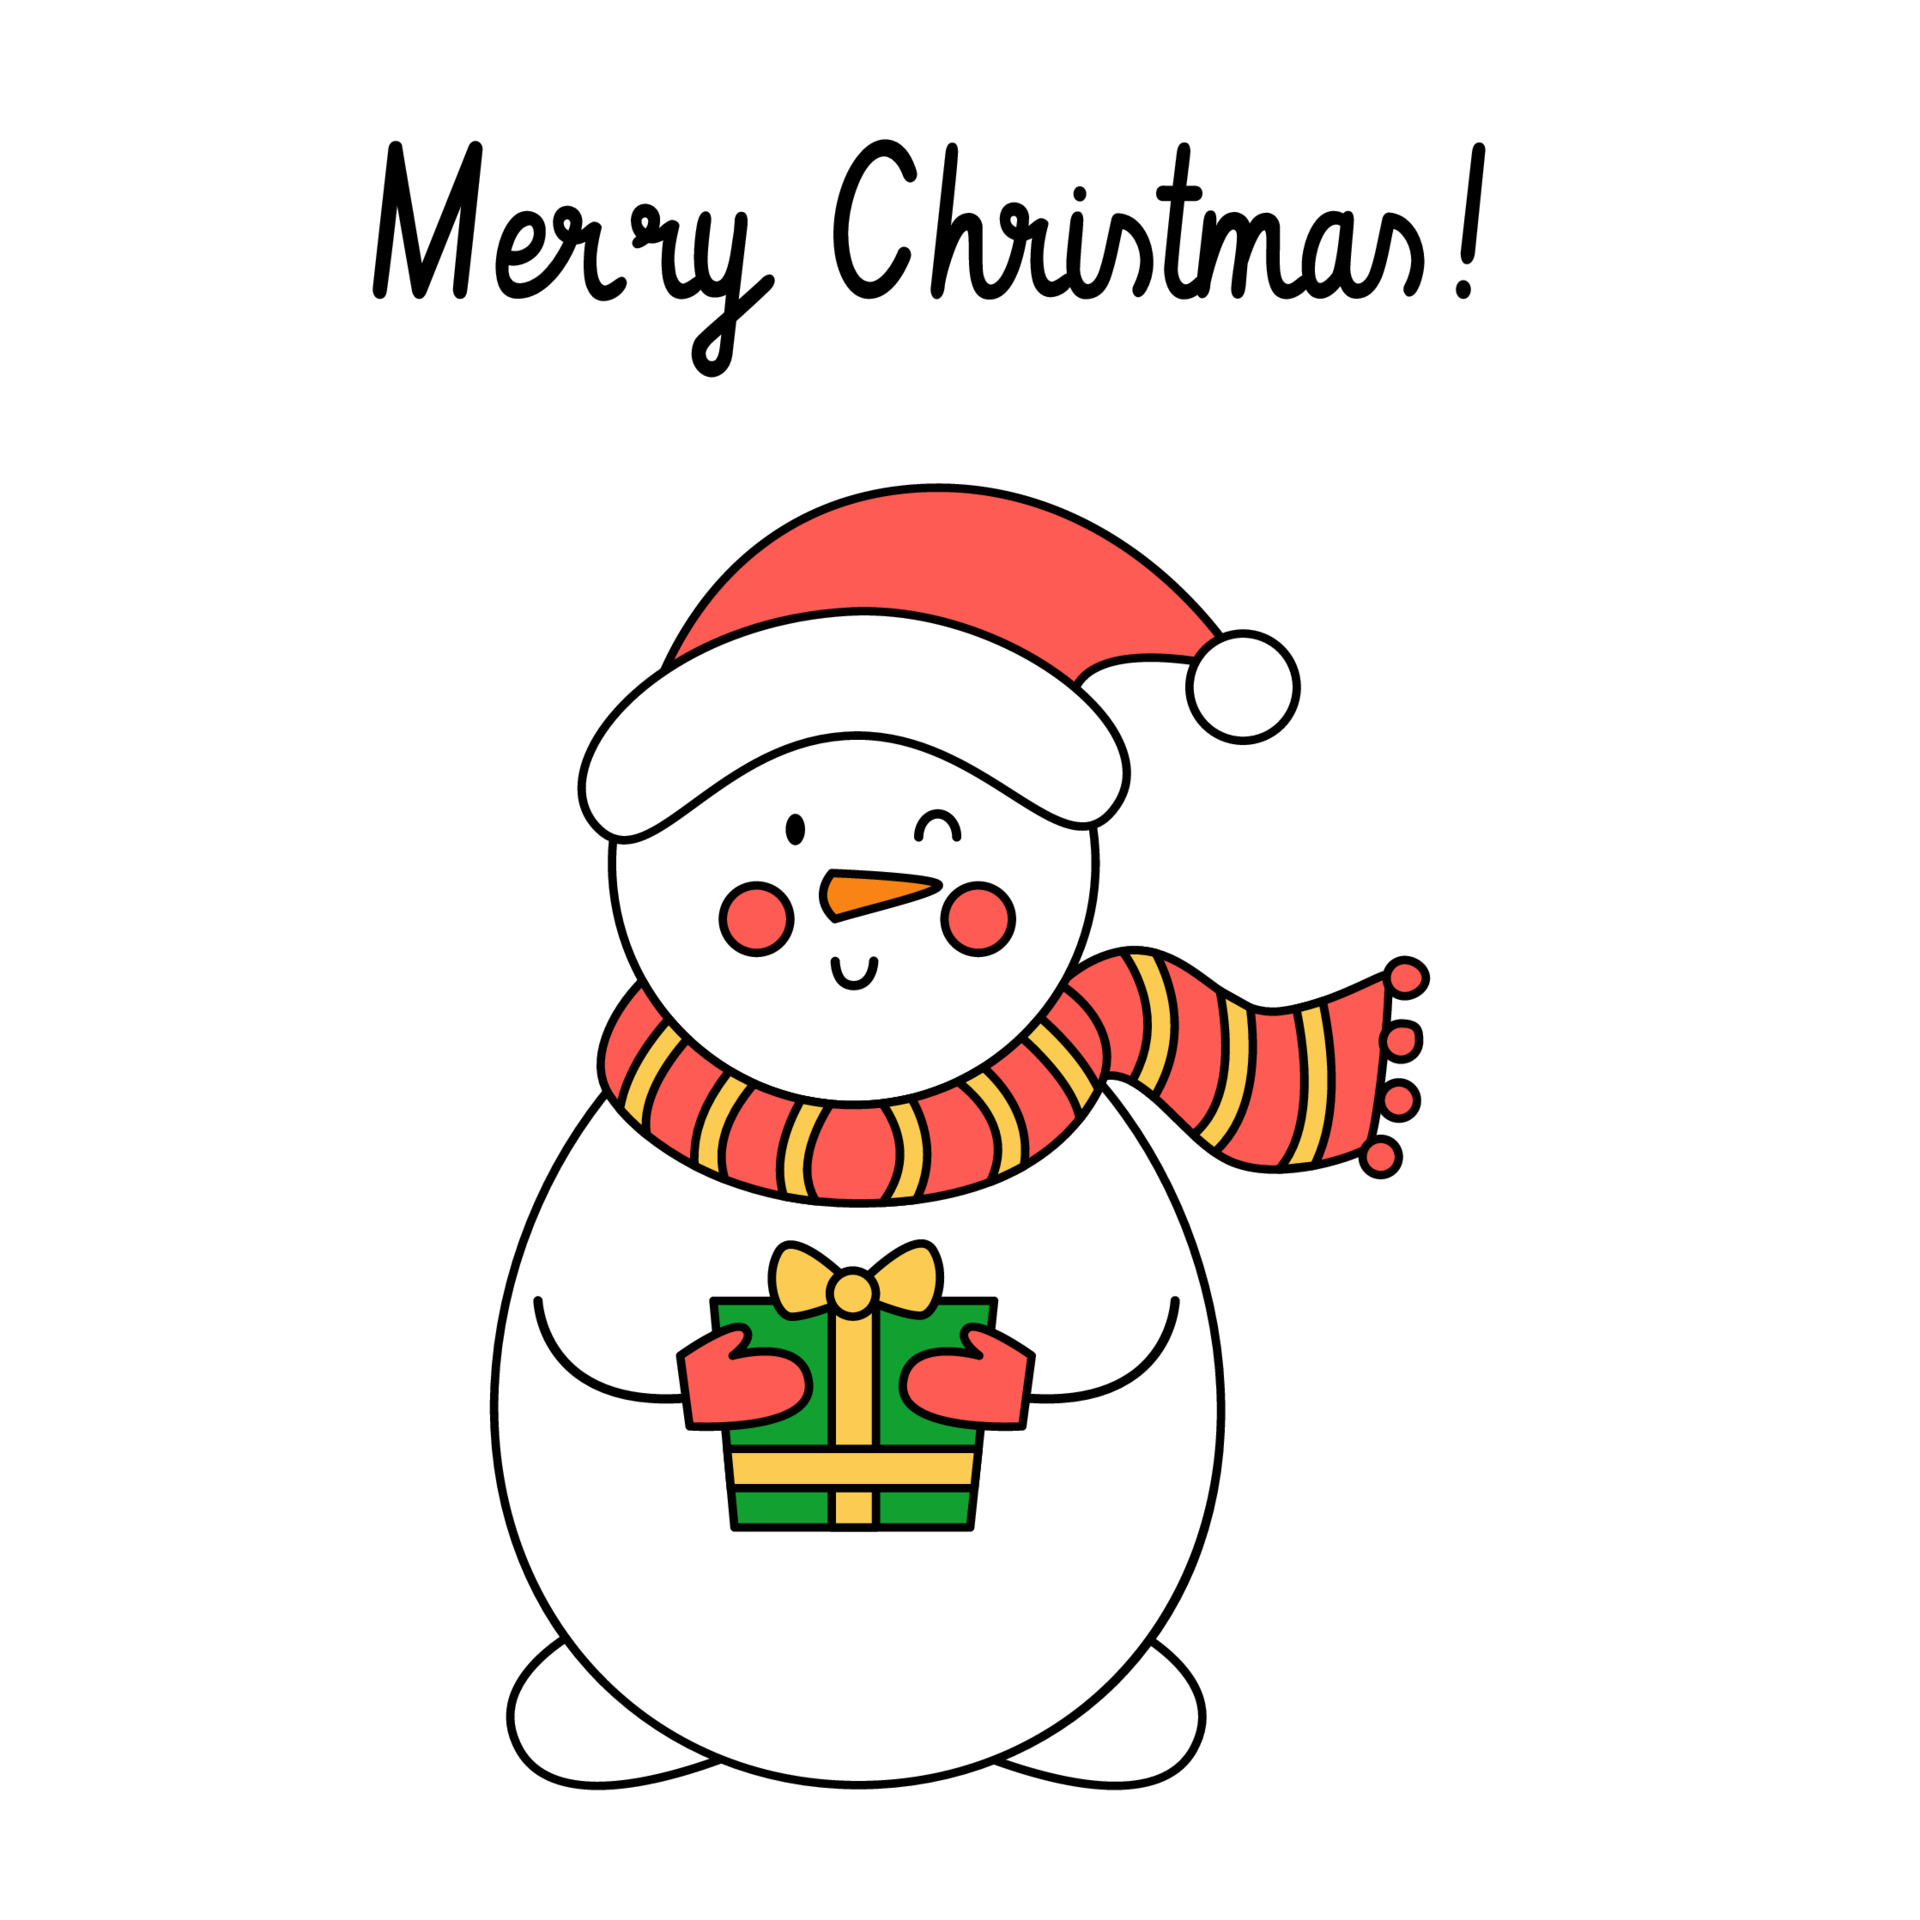 cartão de feliz Natal com boneco de neve bonito dos desenhos animados.  3694472 Vetor no Vecteezy